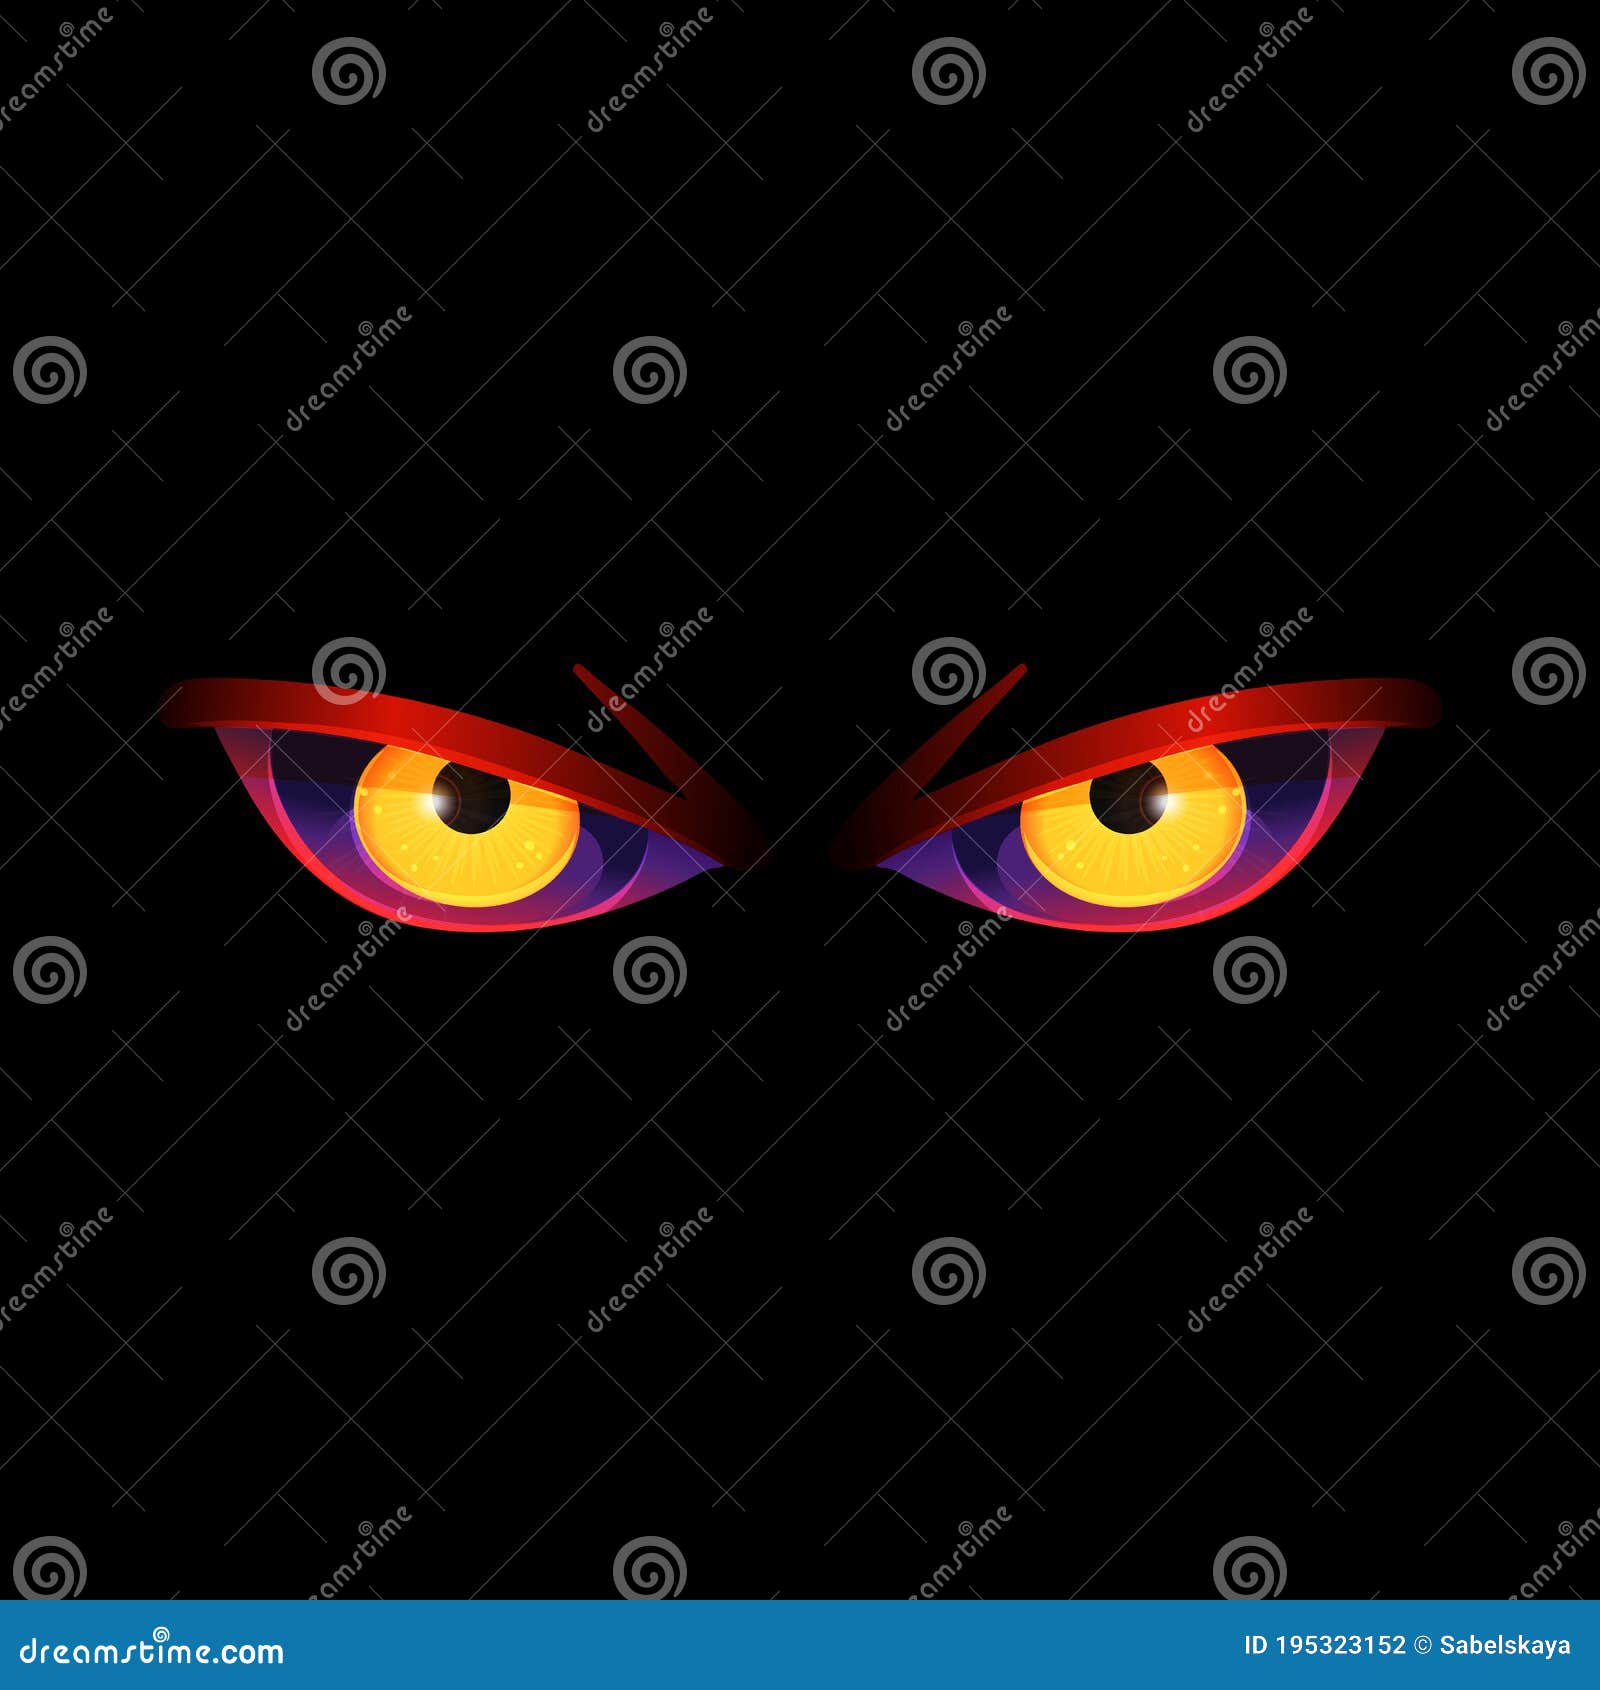 壁纸 : 眼睛, 邪恶, 封面, 皮肤 2560x1440 - Roux - 1745787 - 电脑桌面壁纸 - WallHere 壁纸库